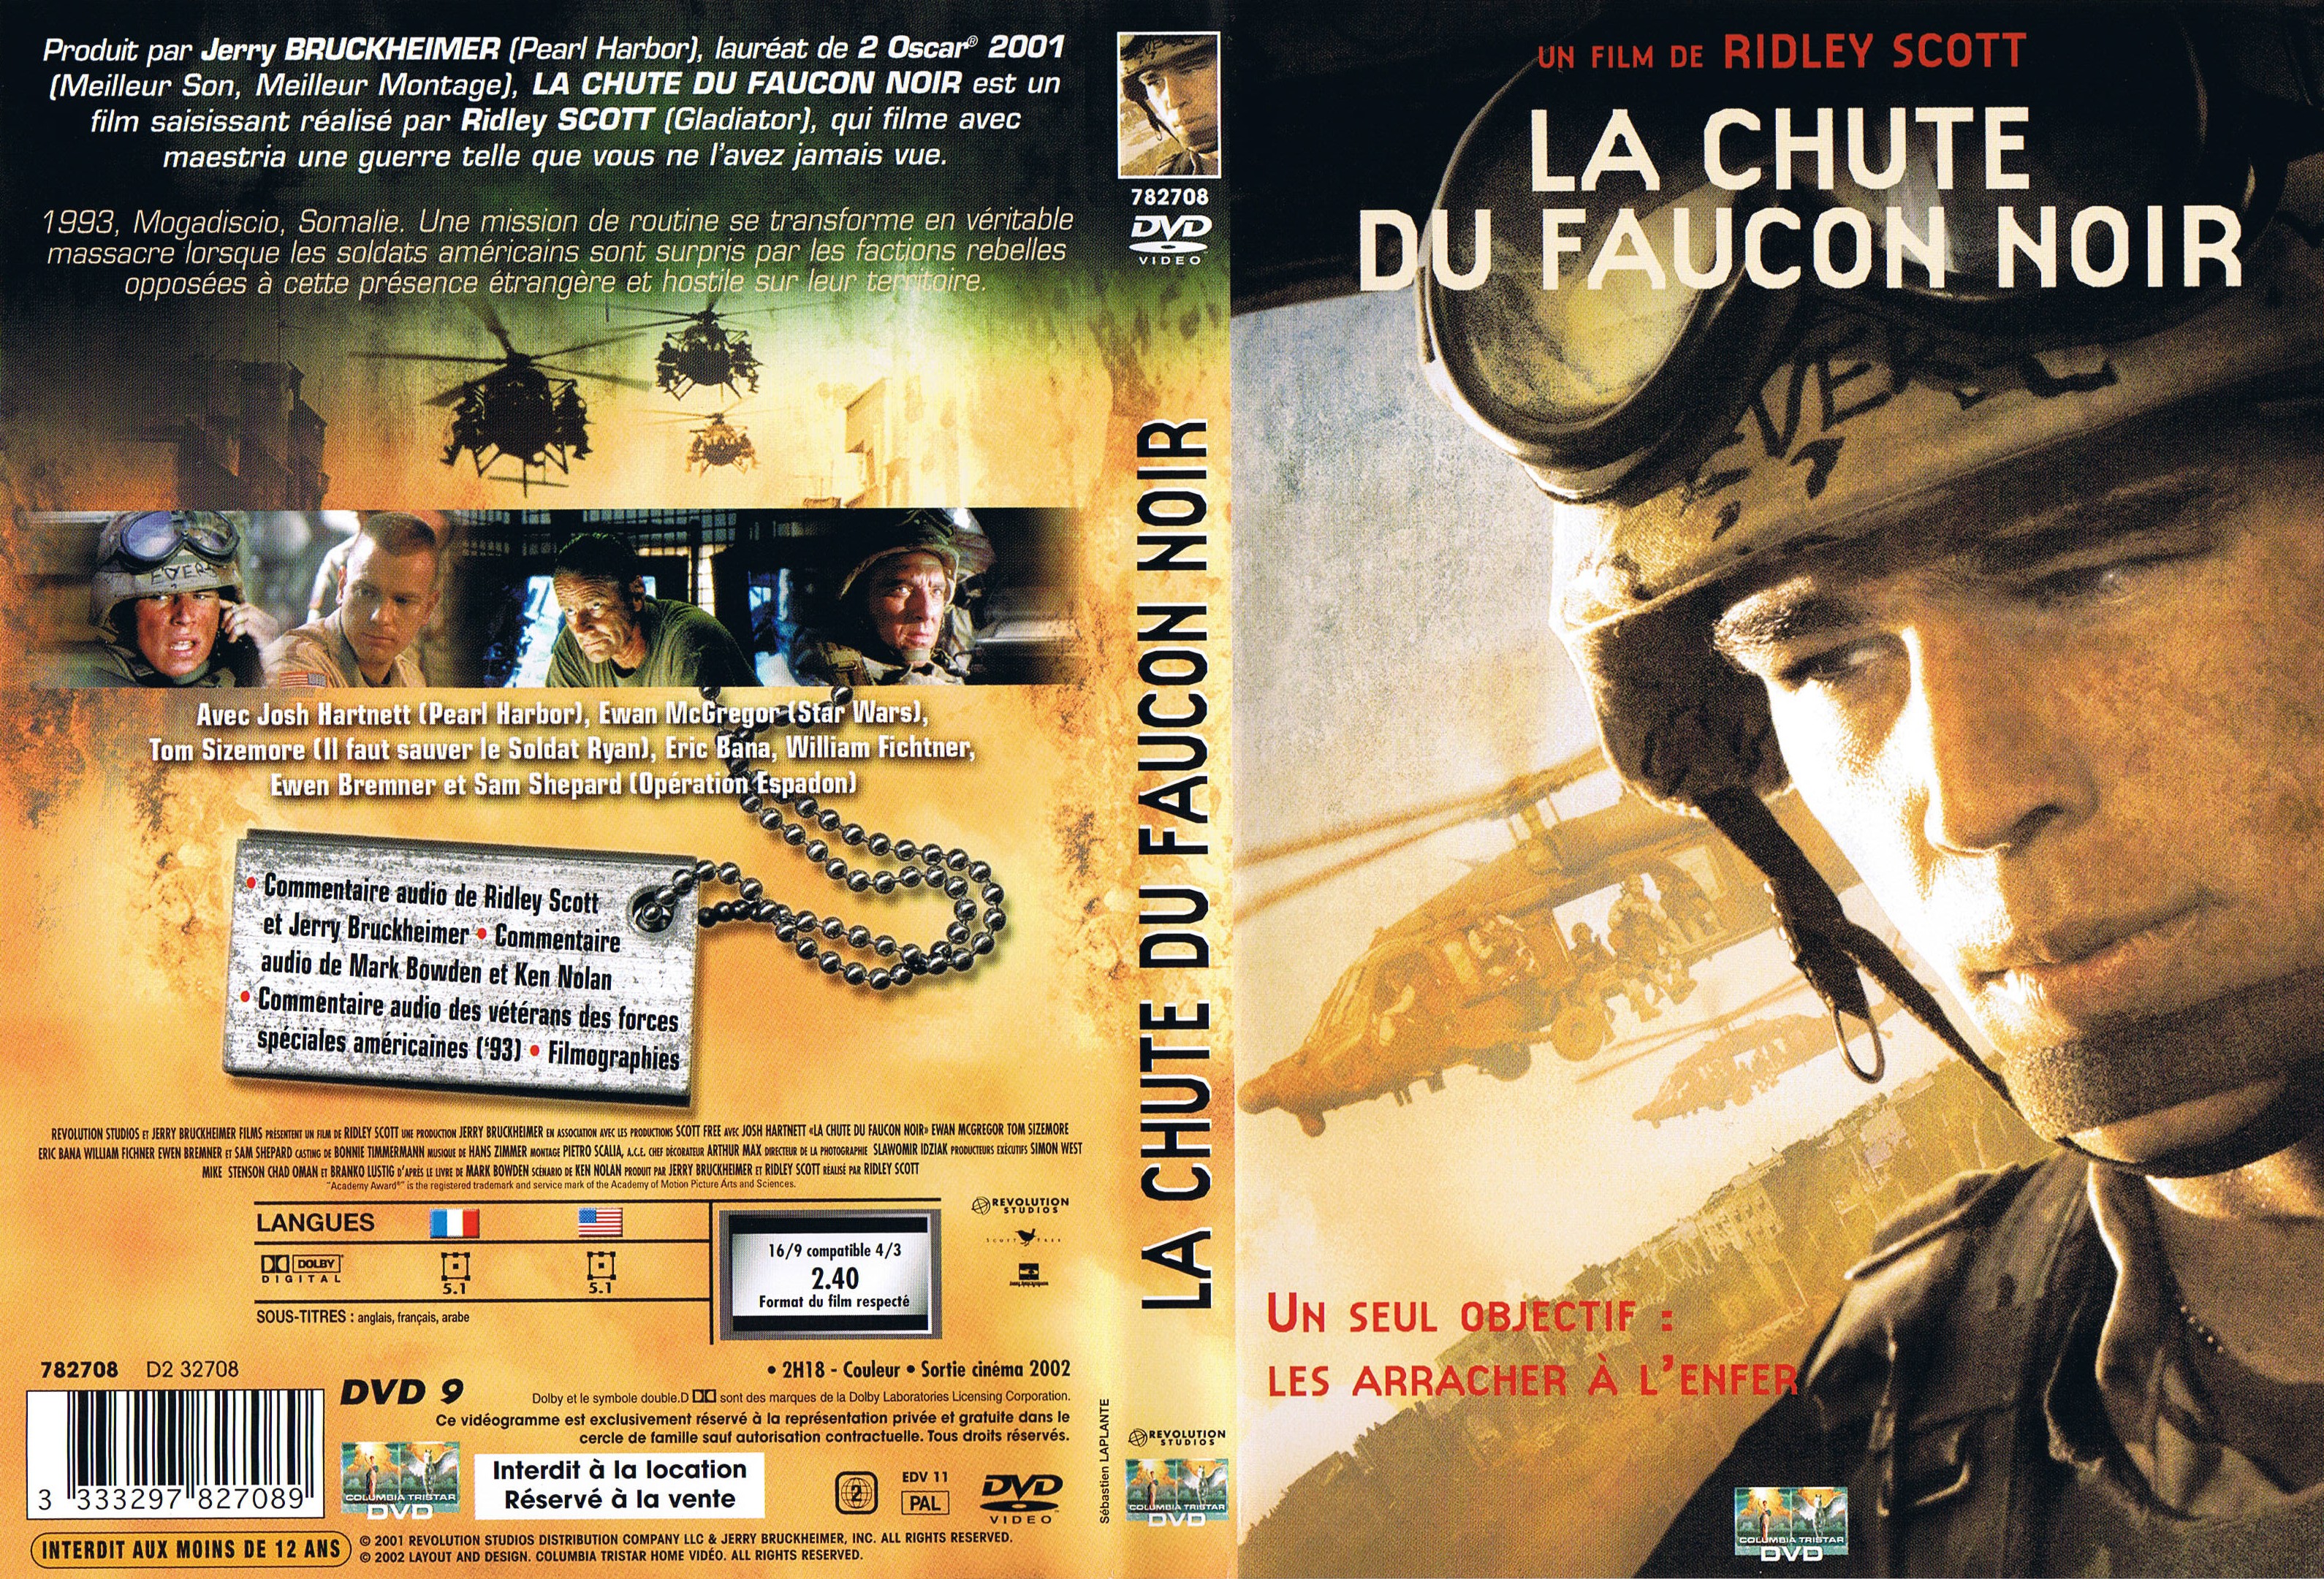 Jaquette DVD La chute du faucon noir v4